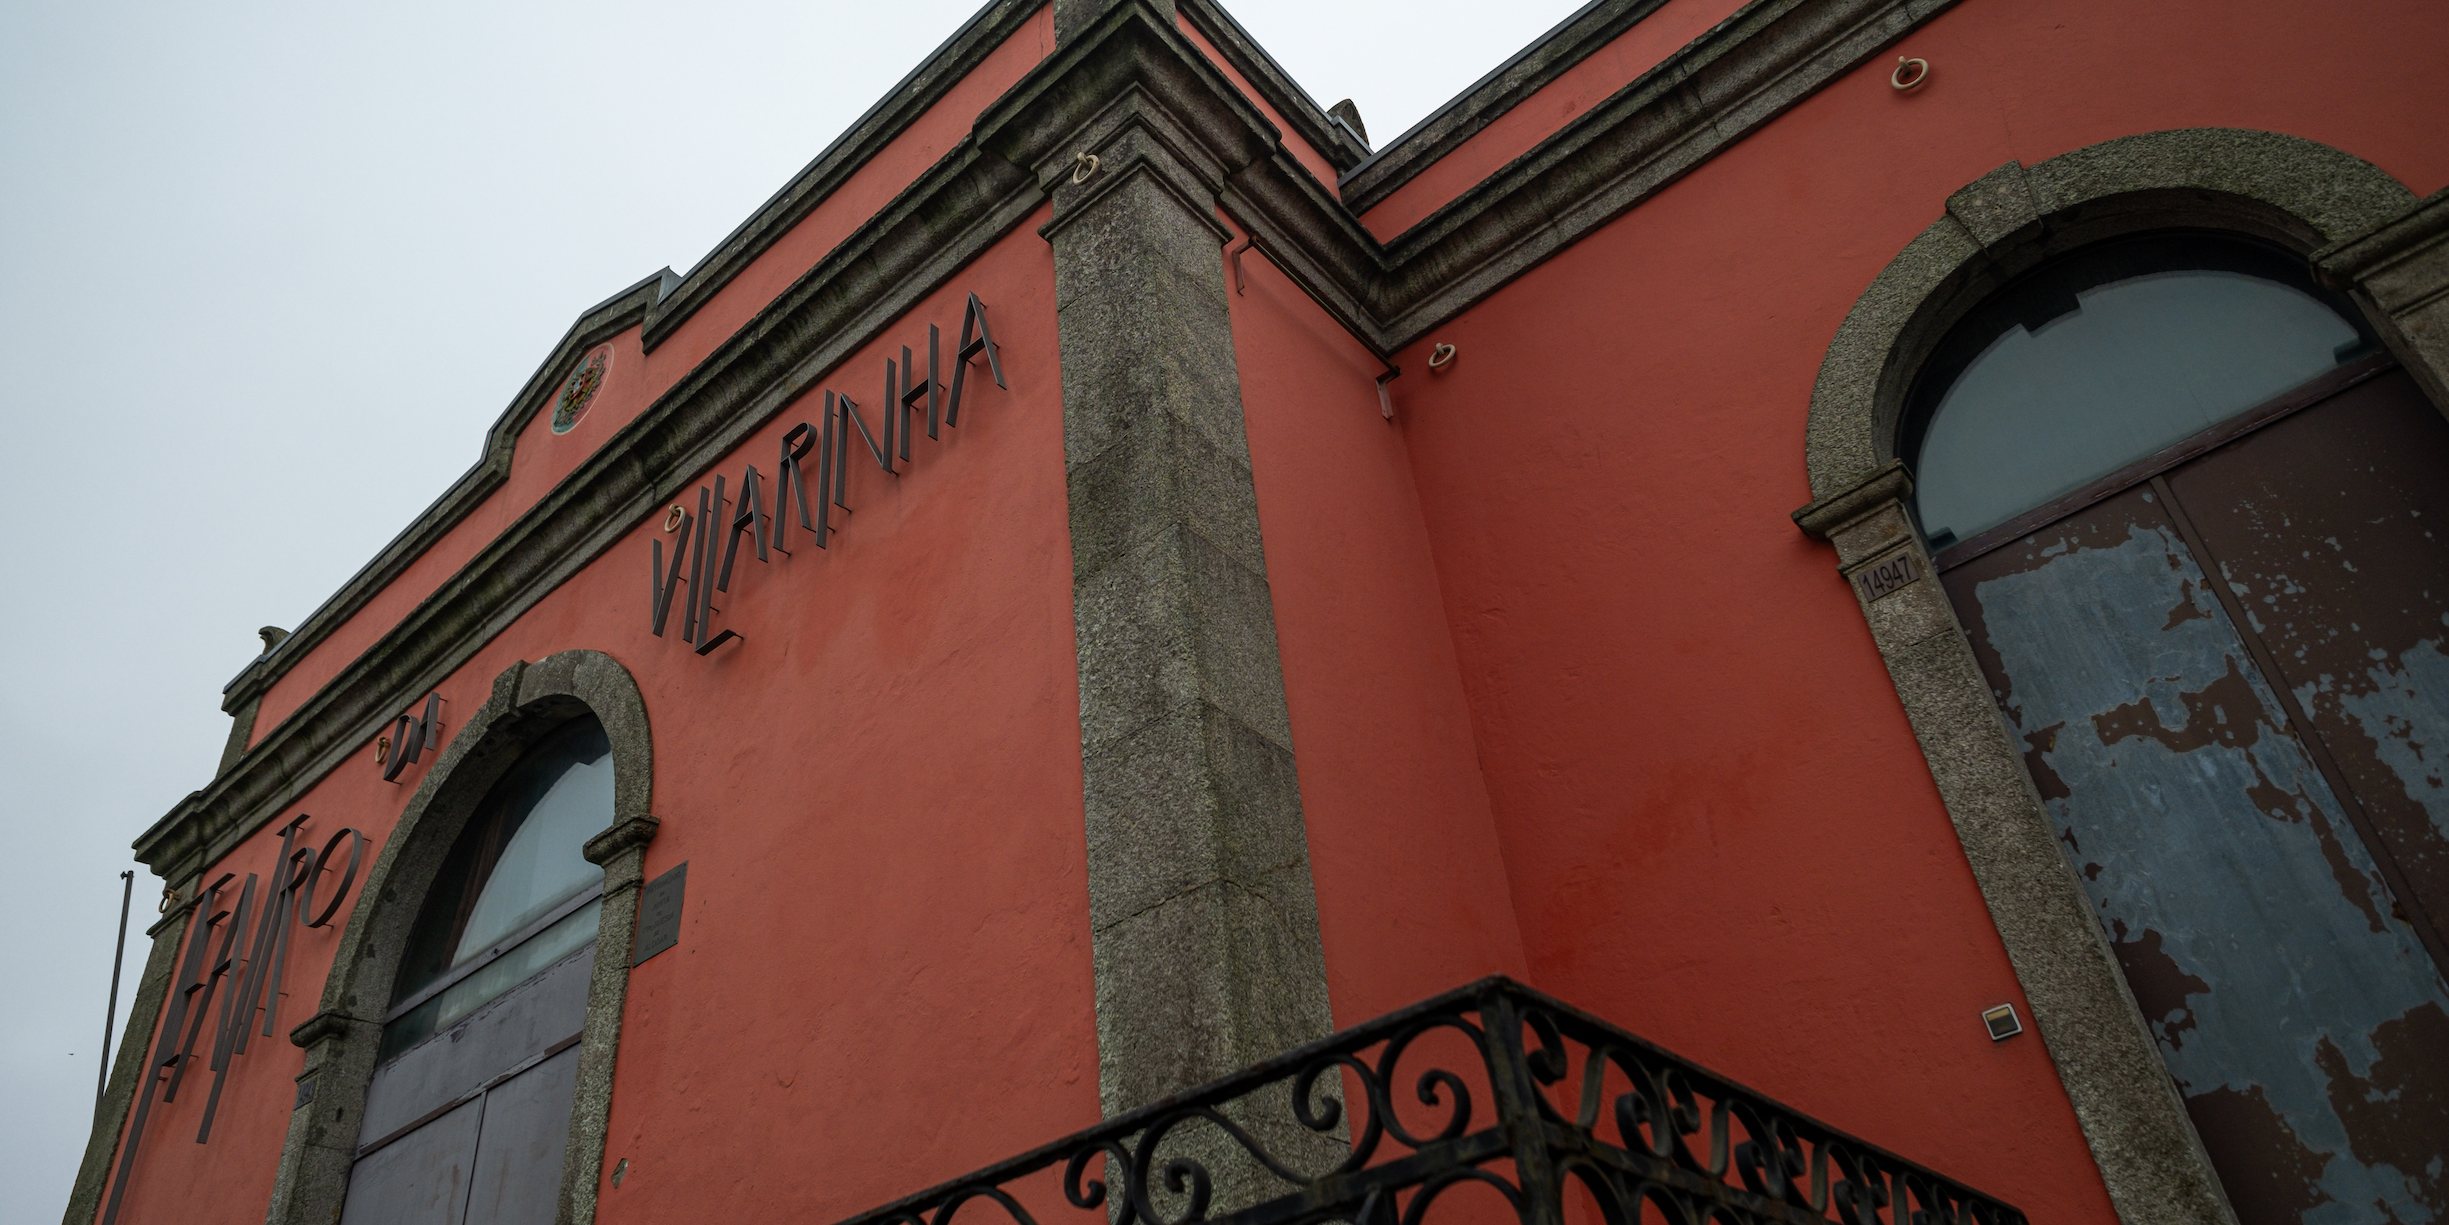 O Teatro da Vilarinha, no Porto, abriu portas em outubro de 1996 e foi até 2018 a casa da companhia de teatro Pé de Vento, fundada nos anos 1970